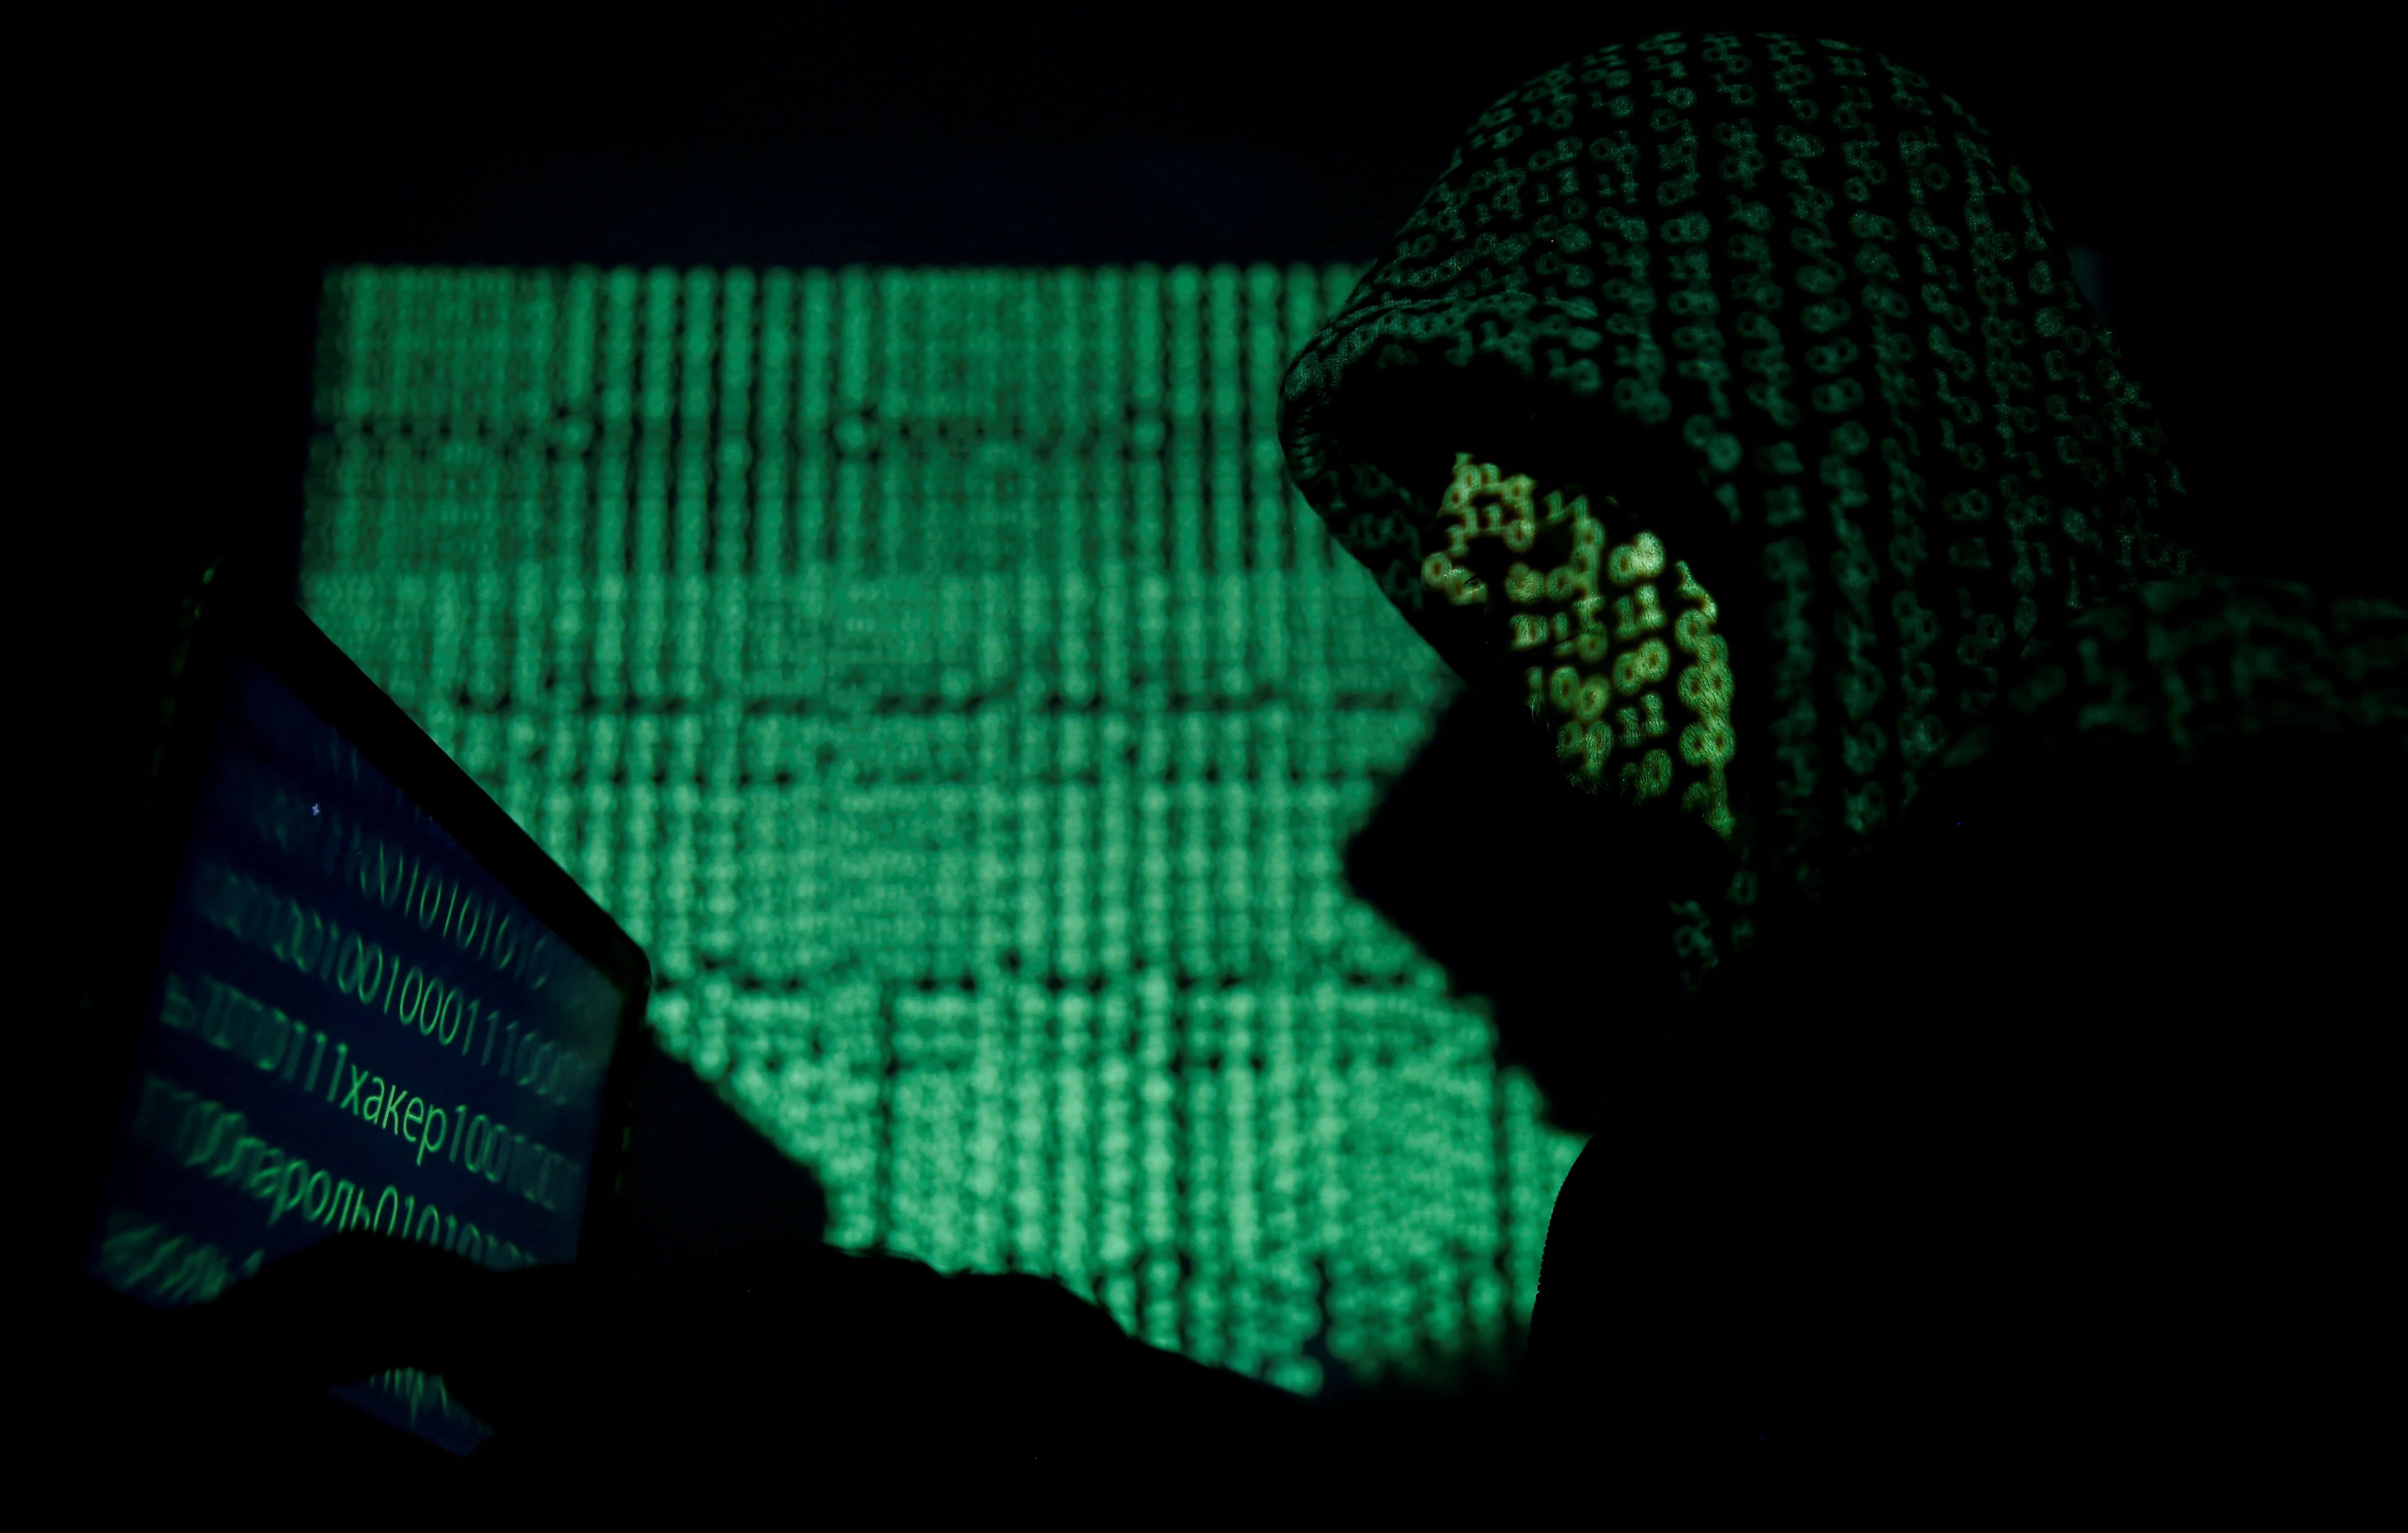 FOTO DE ARCHIVO: Un hombre encapuchado sostiene una computadora portátil mientras se proyecta un código cibernético sobre él en esta fotografía ilustrativa tomada el 13 de mayo de 2017. REUTERS/Kacper Pempel/Illustration/File Photo